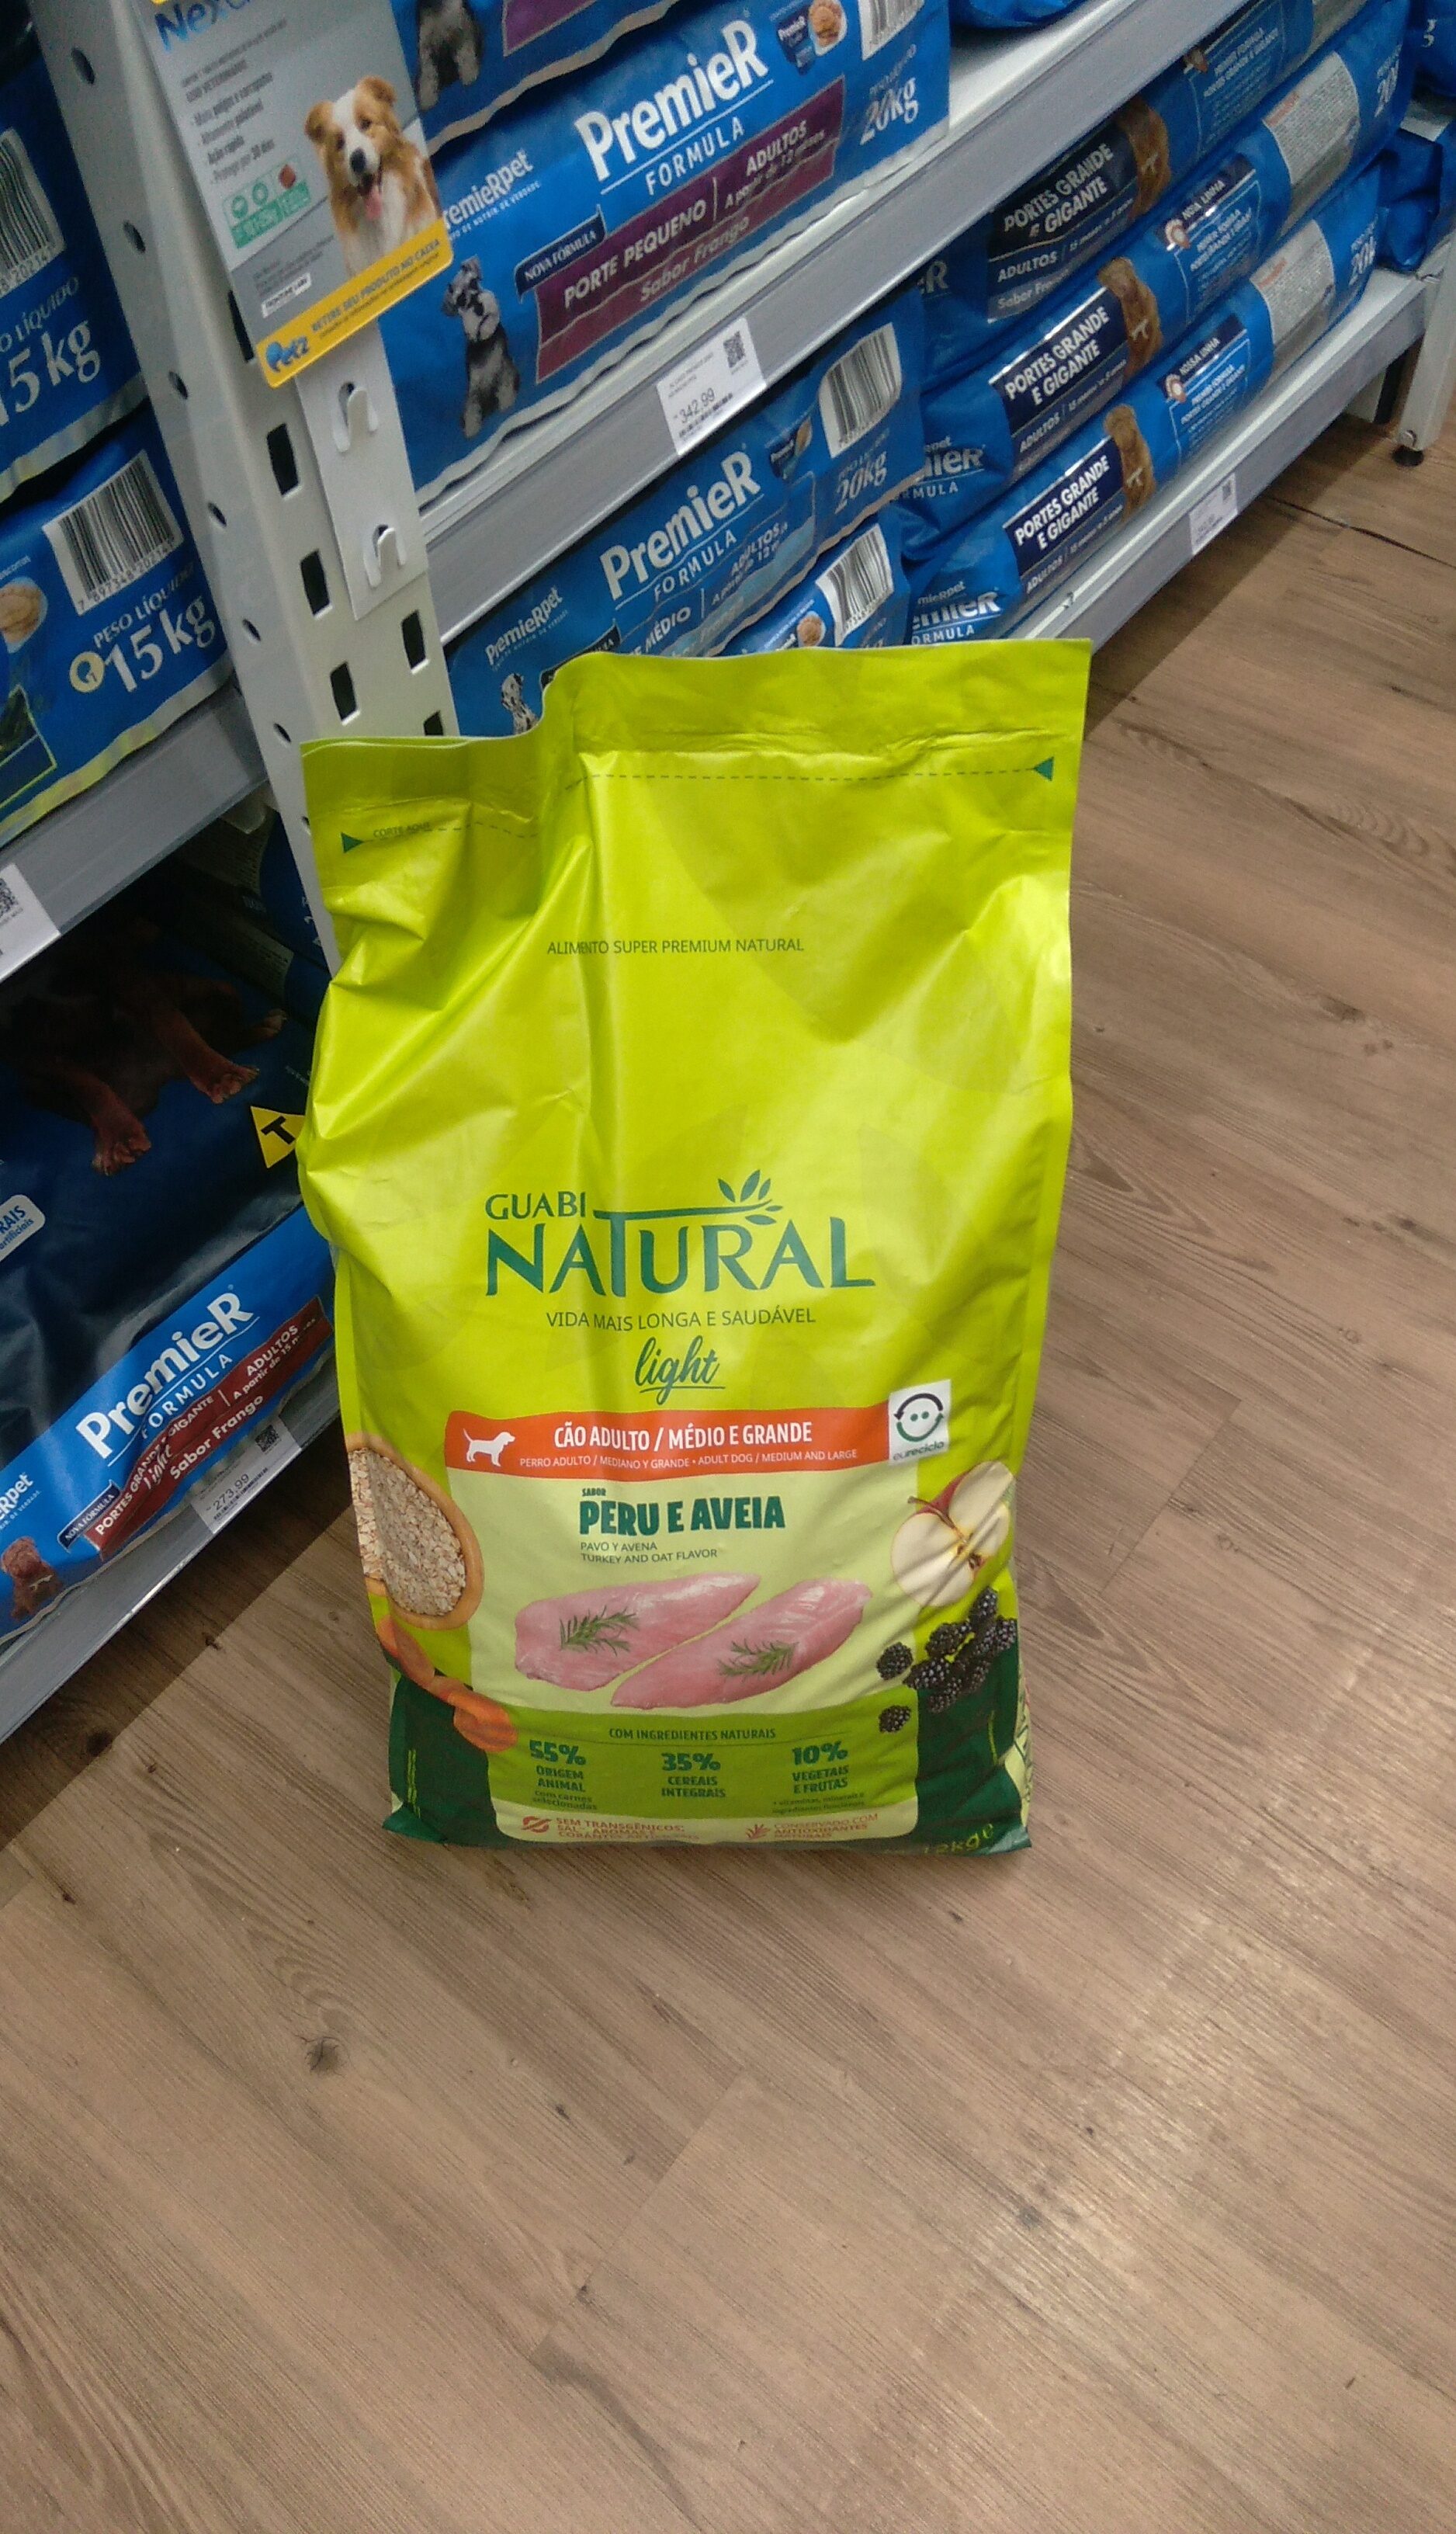 Guabi Natural 12kg AD RMG LGH PERU AVE - Product - pt